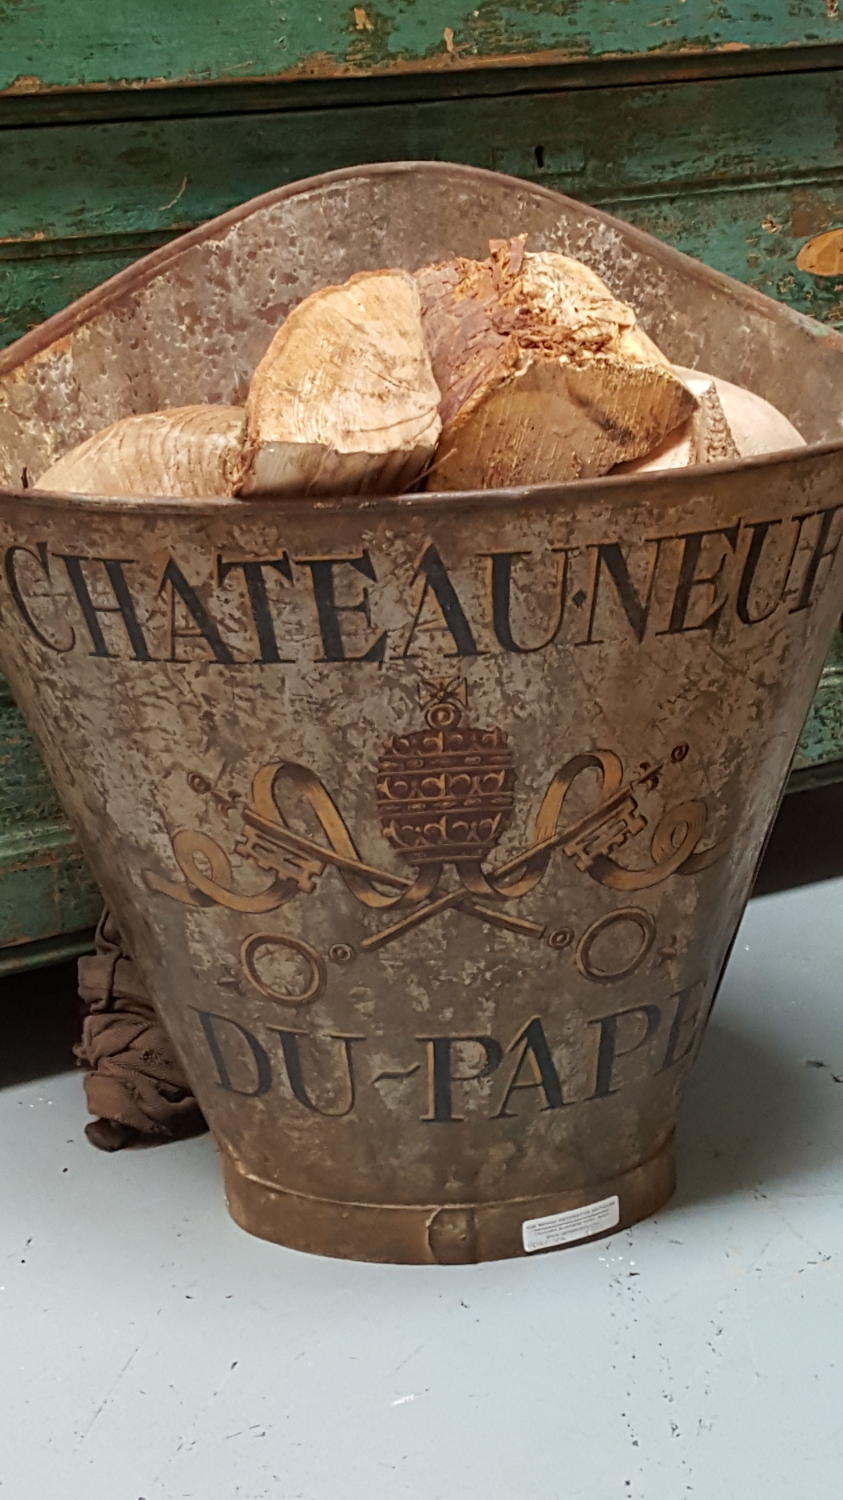 Zinc Chateauneuf du pape grape hod